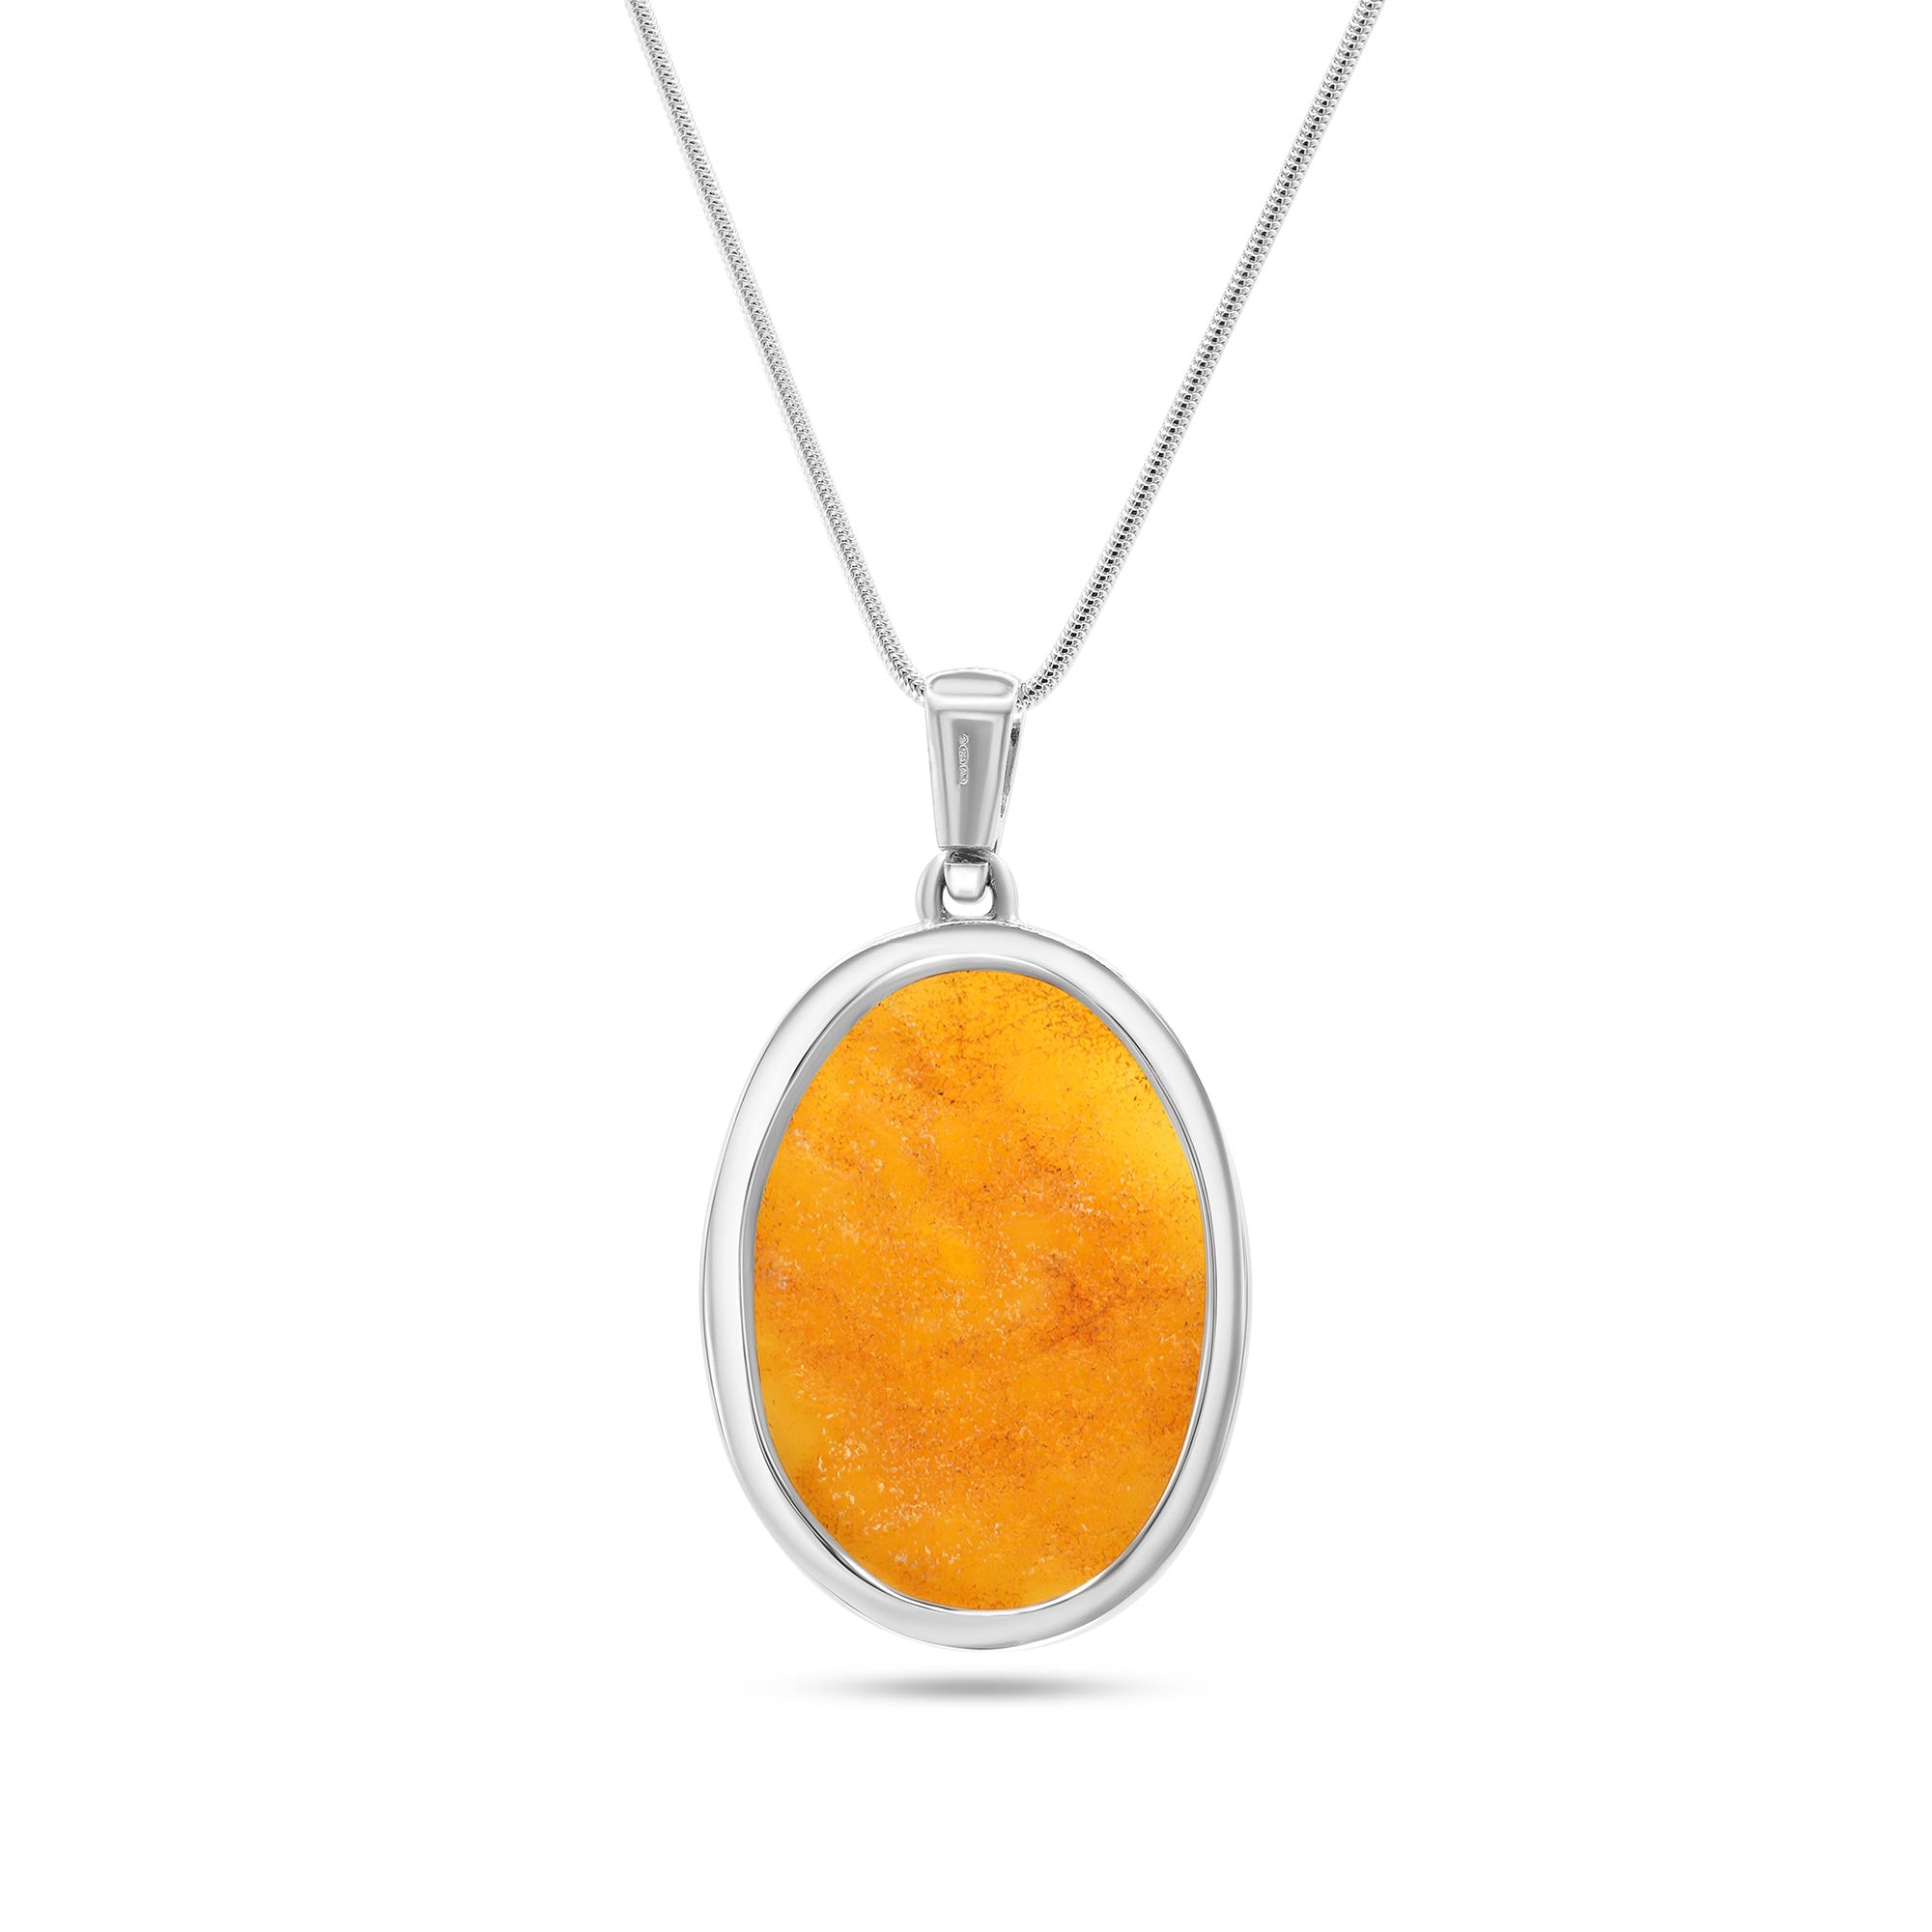 Large Yellow Amber Circle Pendant - Baltic Beauty